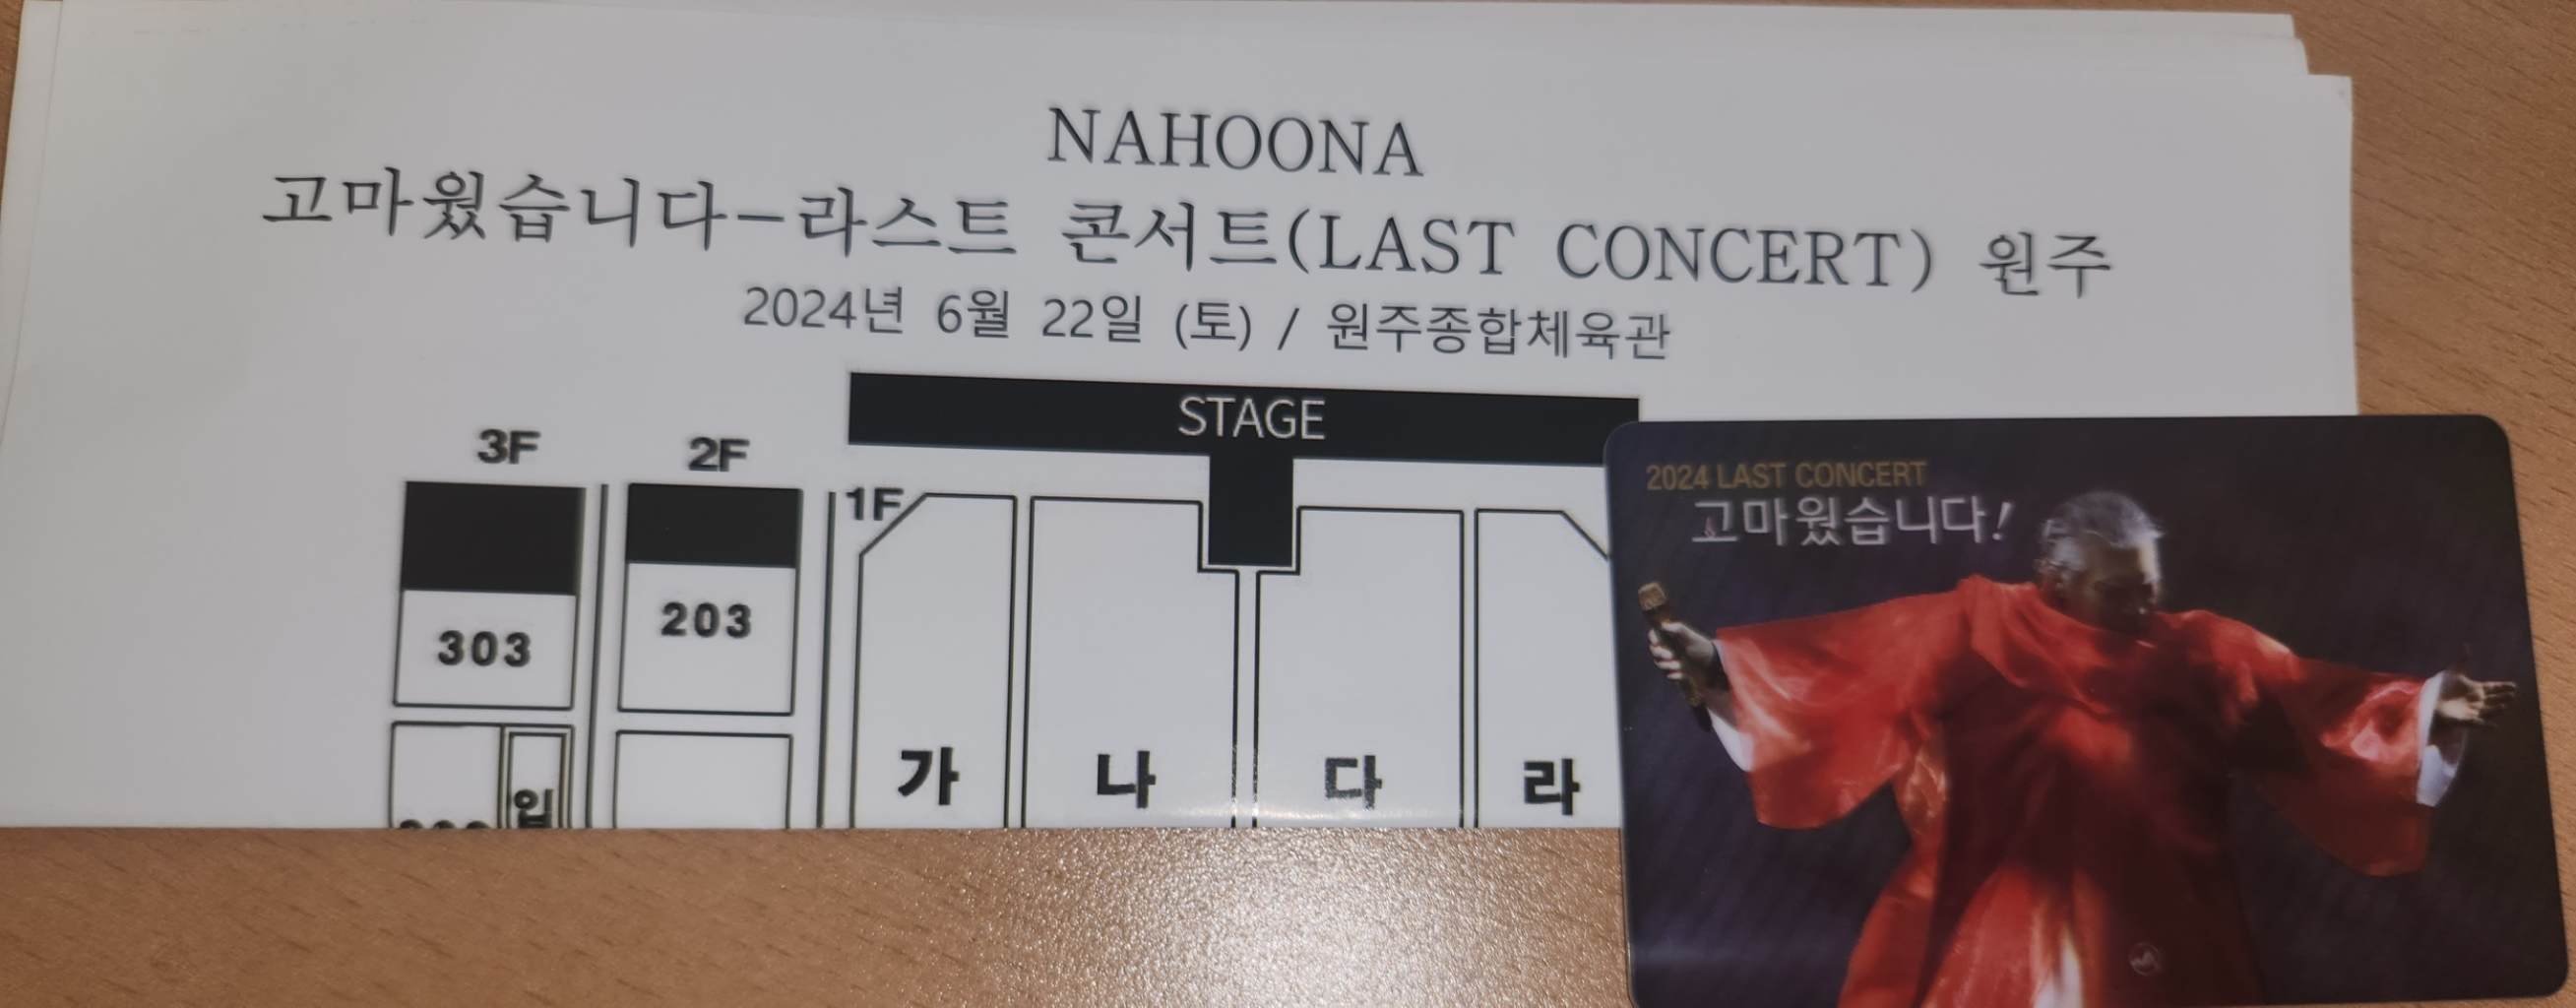 나훈아 2024 라스트 콘서트 티켓